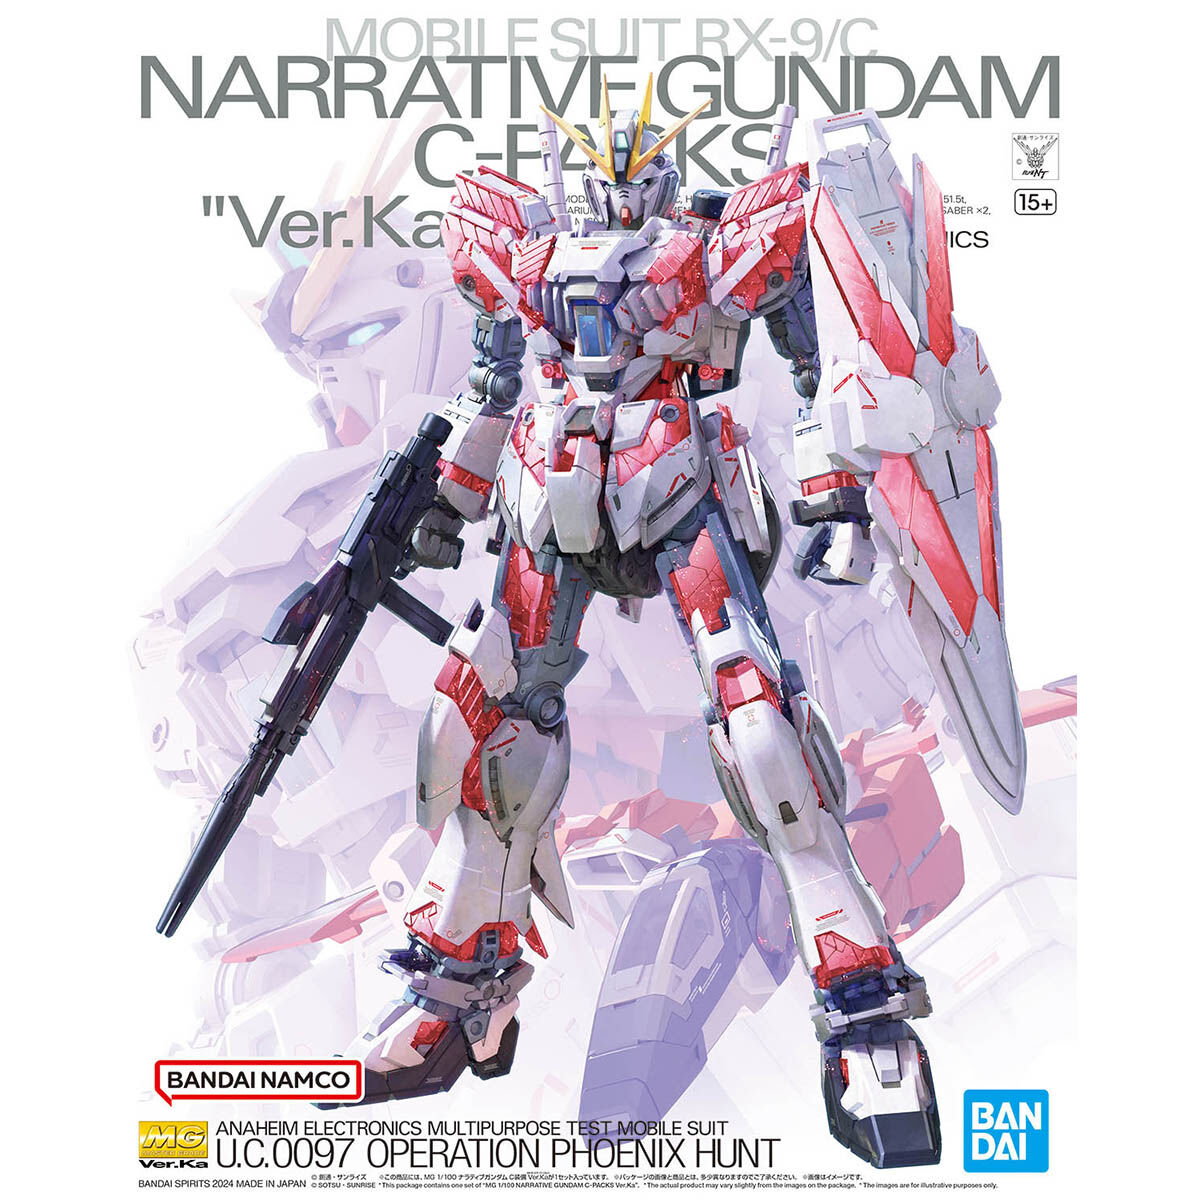 MG 1/144 RX-9/C Narrative Gundam C-Packs Ver.Ka